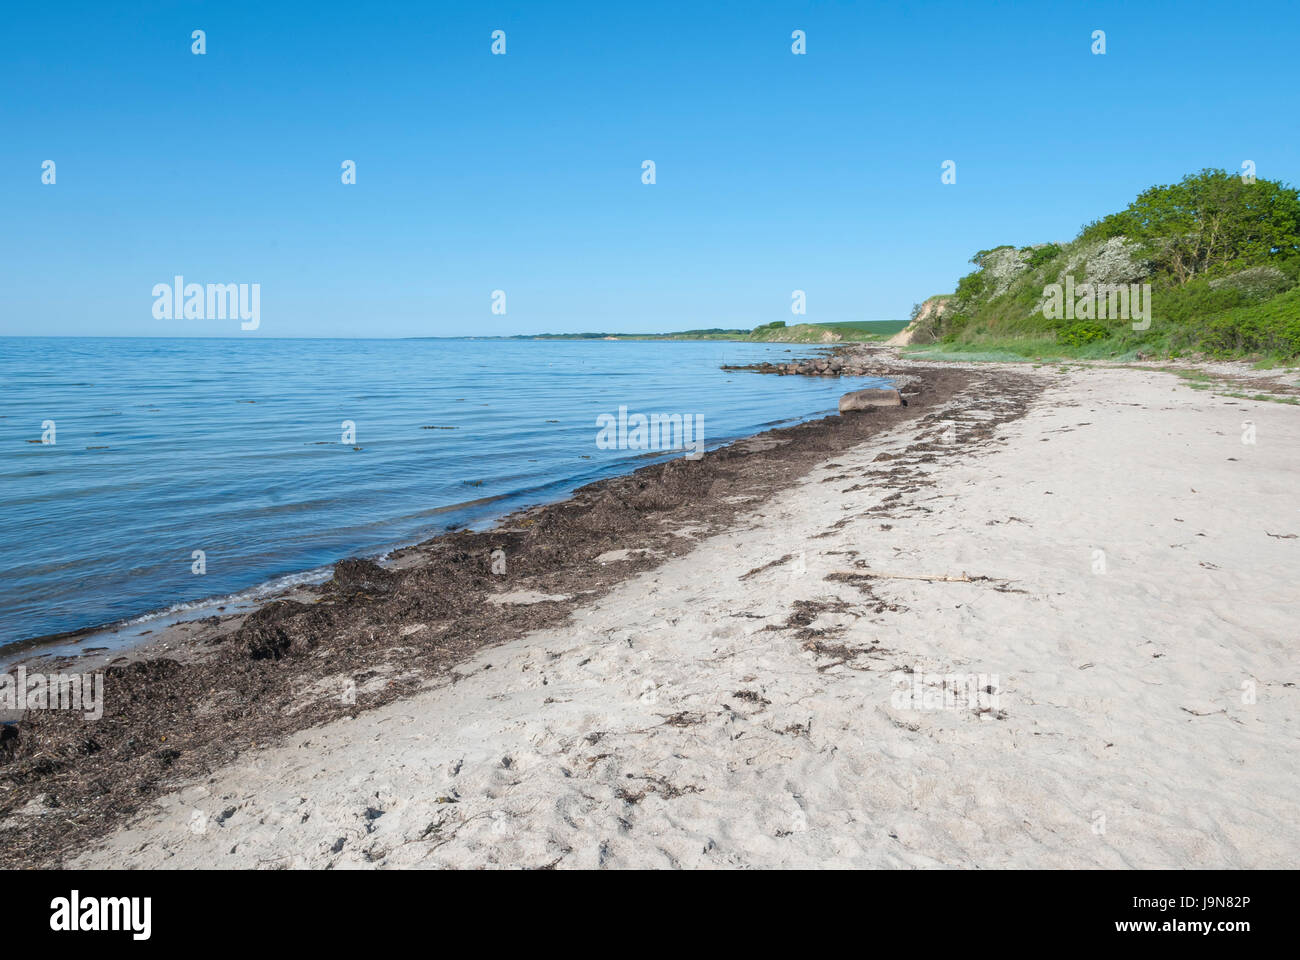 Plage de sable à l'île de Langeland Danemark Banque D'Images